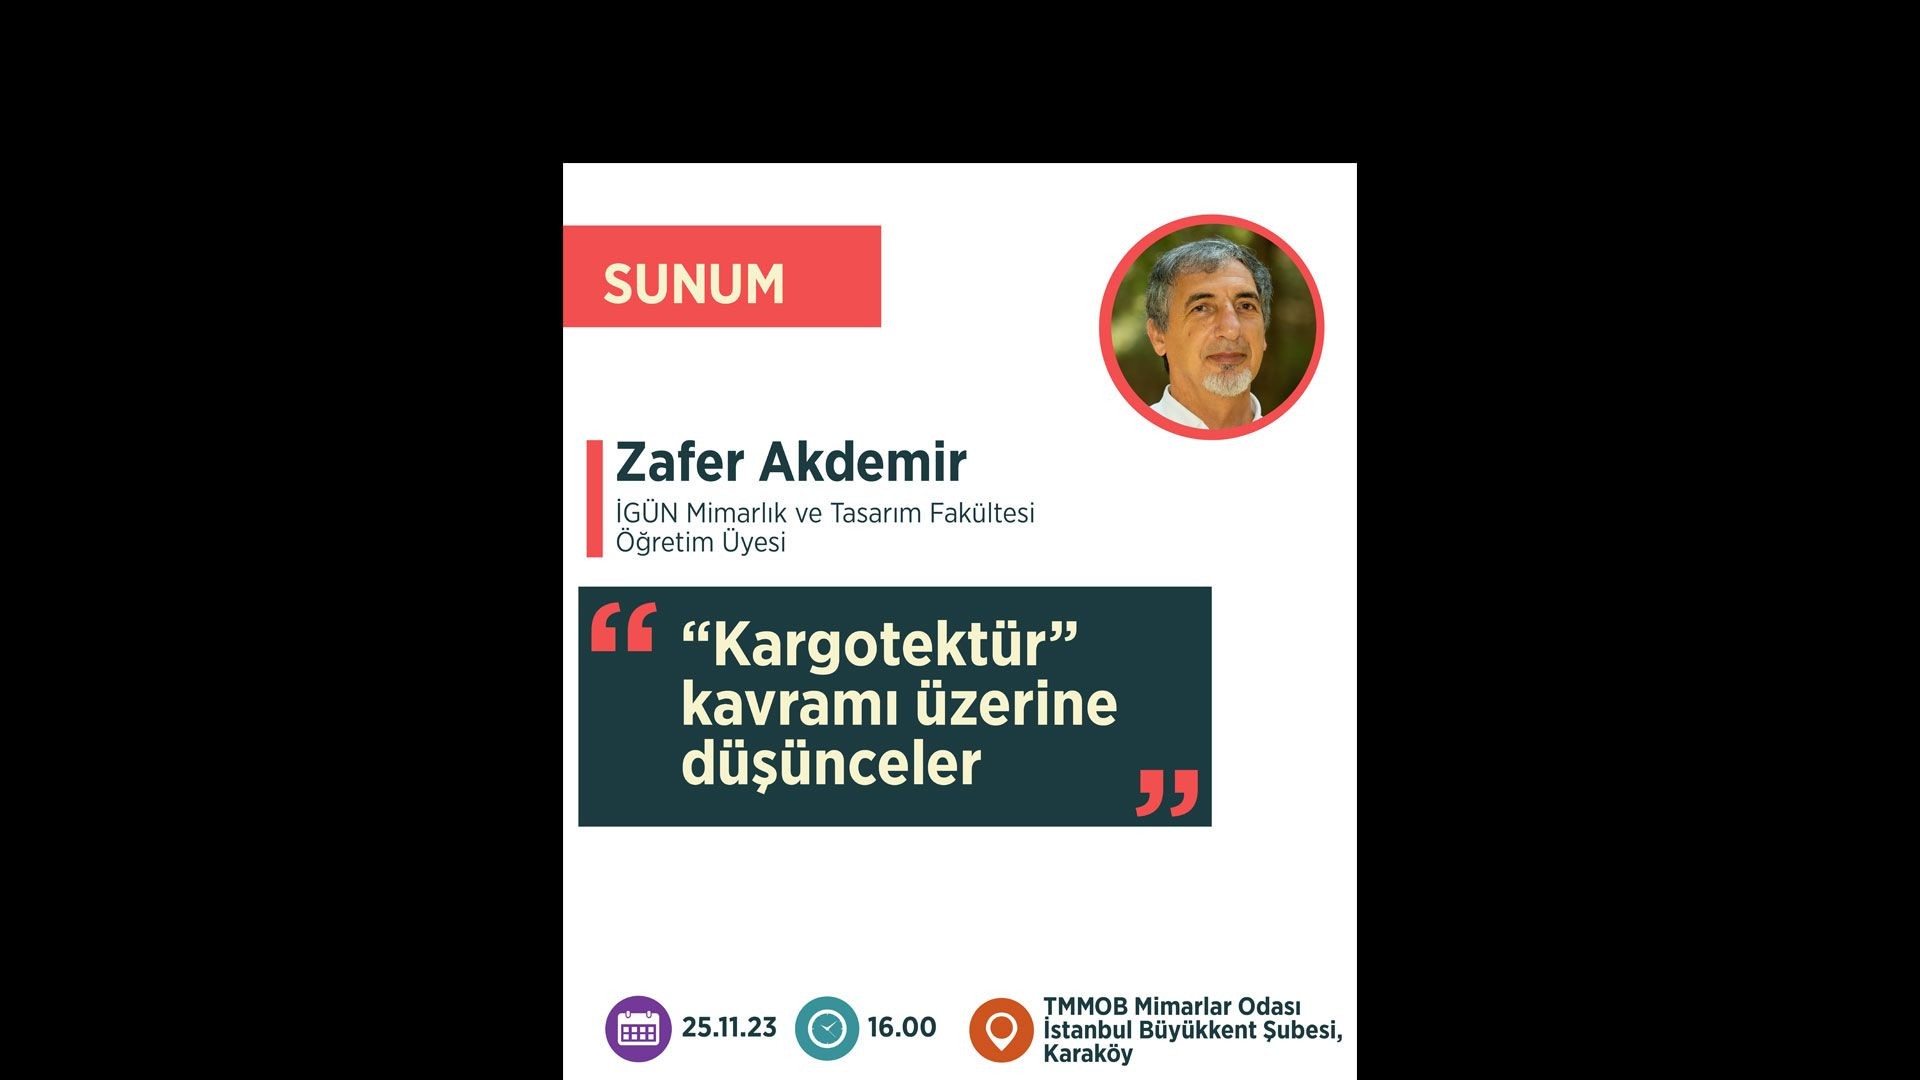 ⁣“Kargotektür kavramı üzerine düşünceler” - Prof. Dr. M. Zafer Akdemir